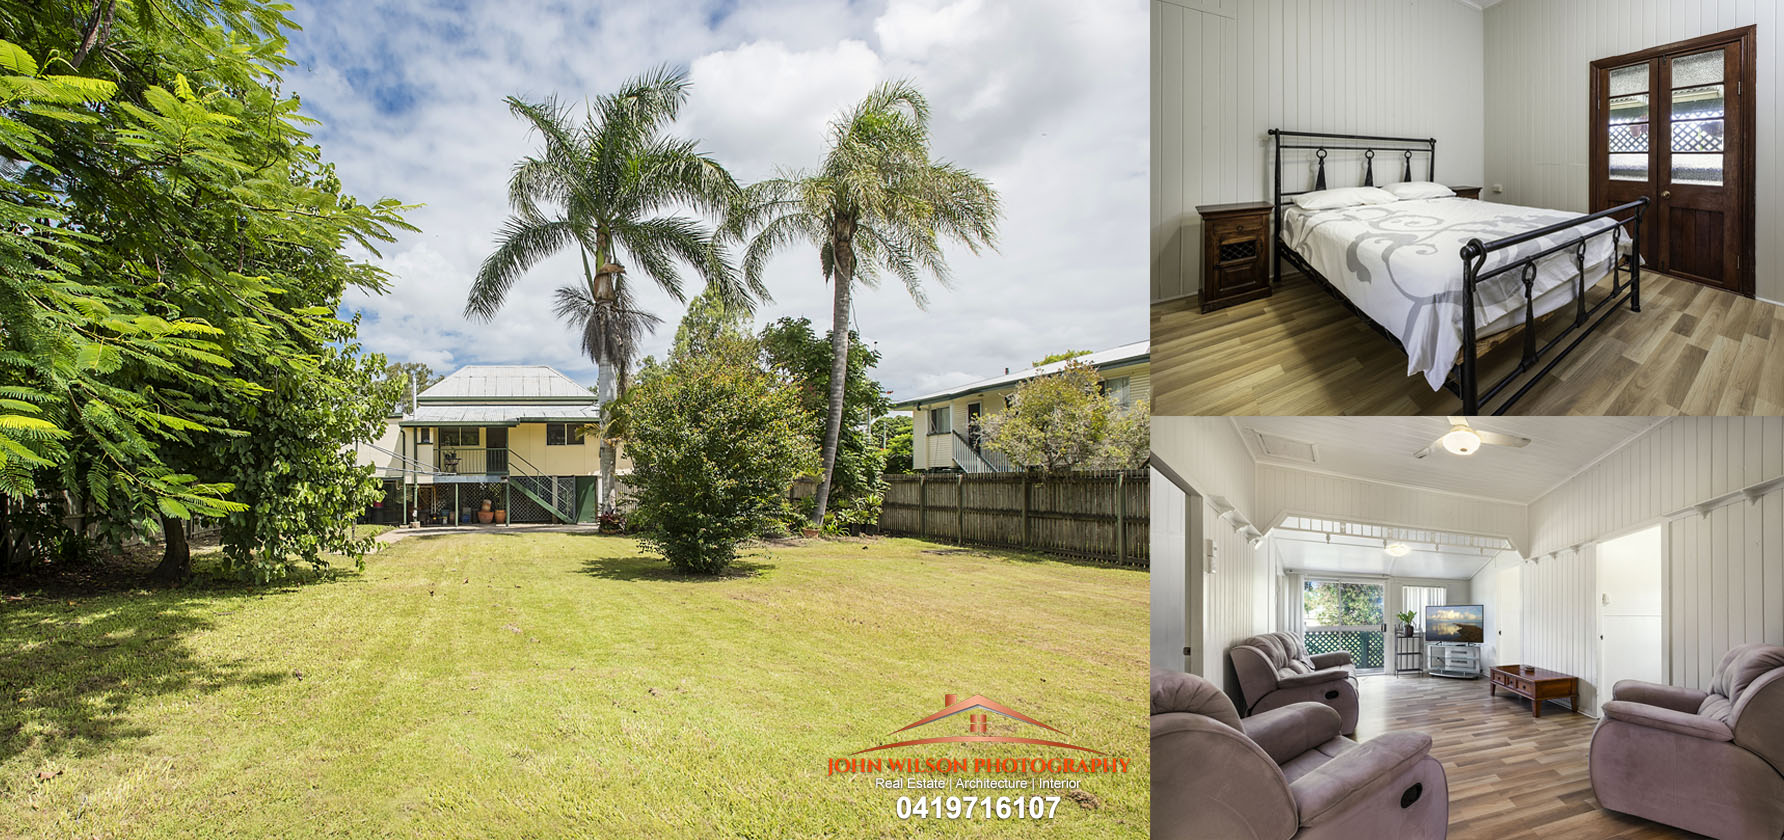 4 Puller St, Granville, 4650 For Sale - Queenslander Style Family Home